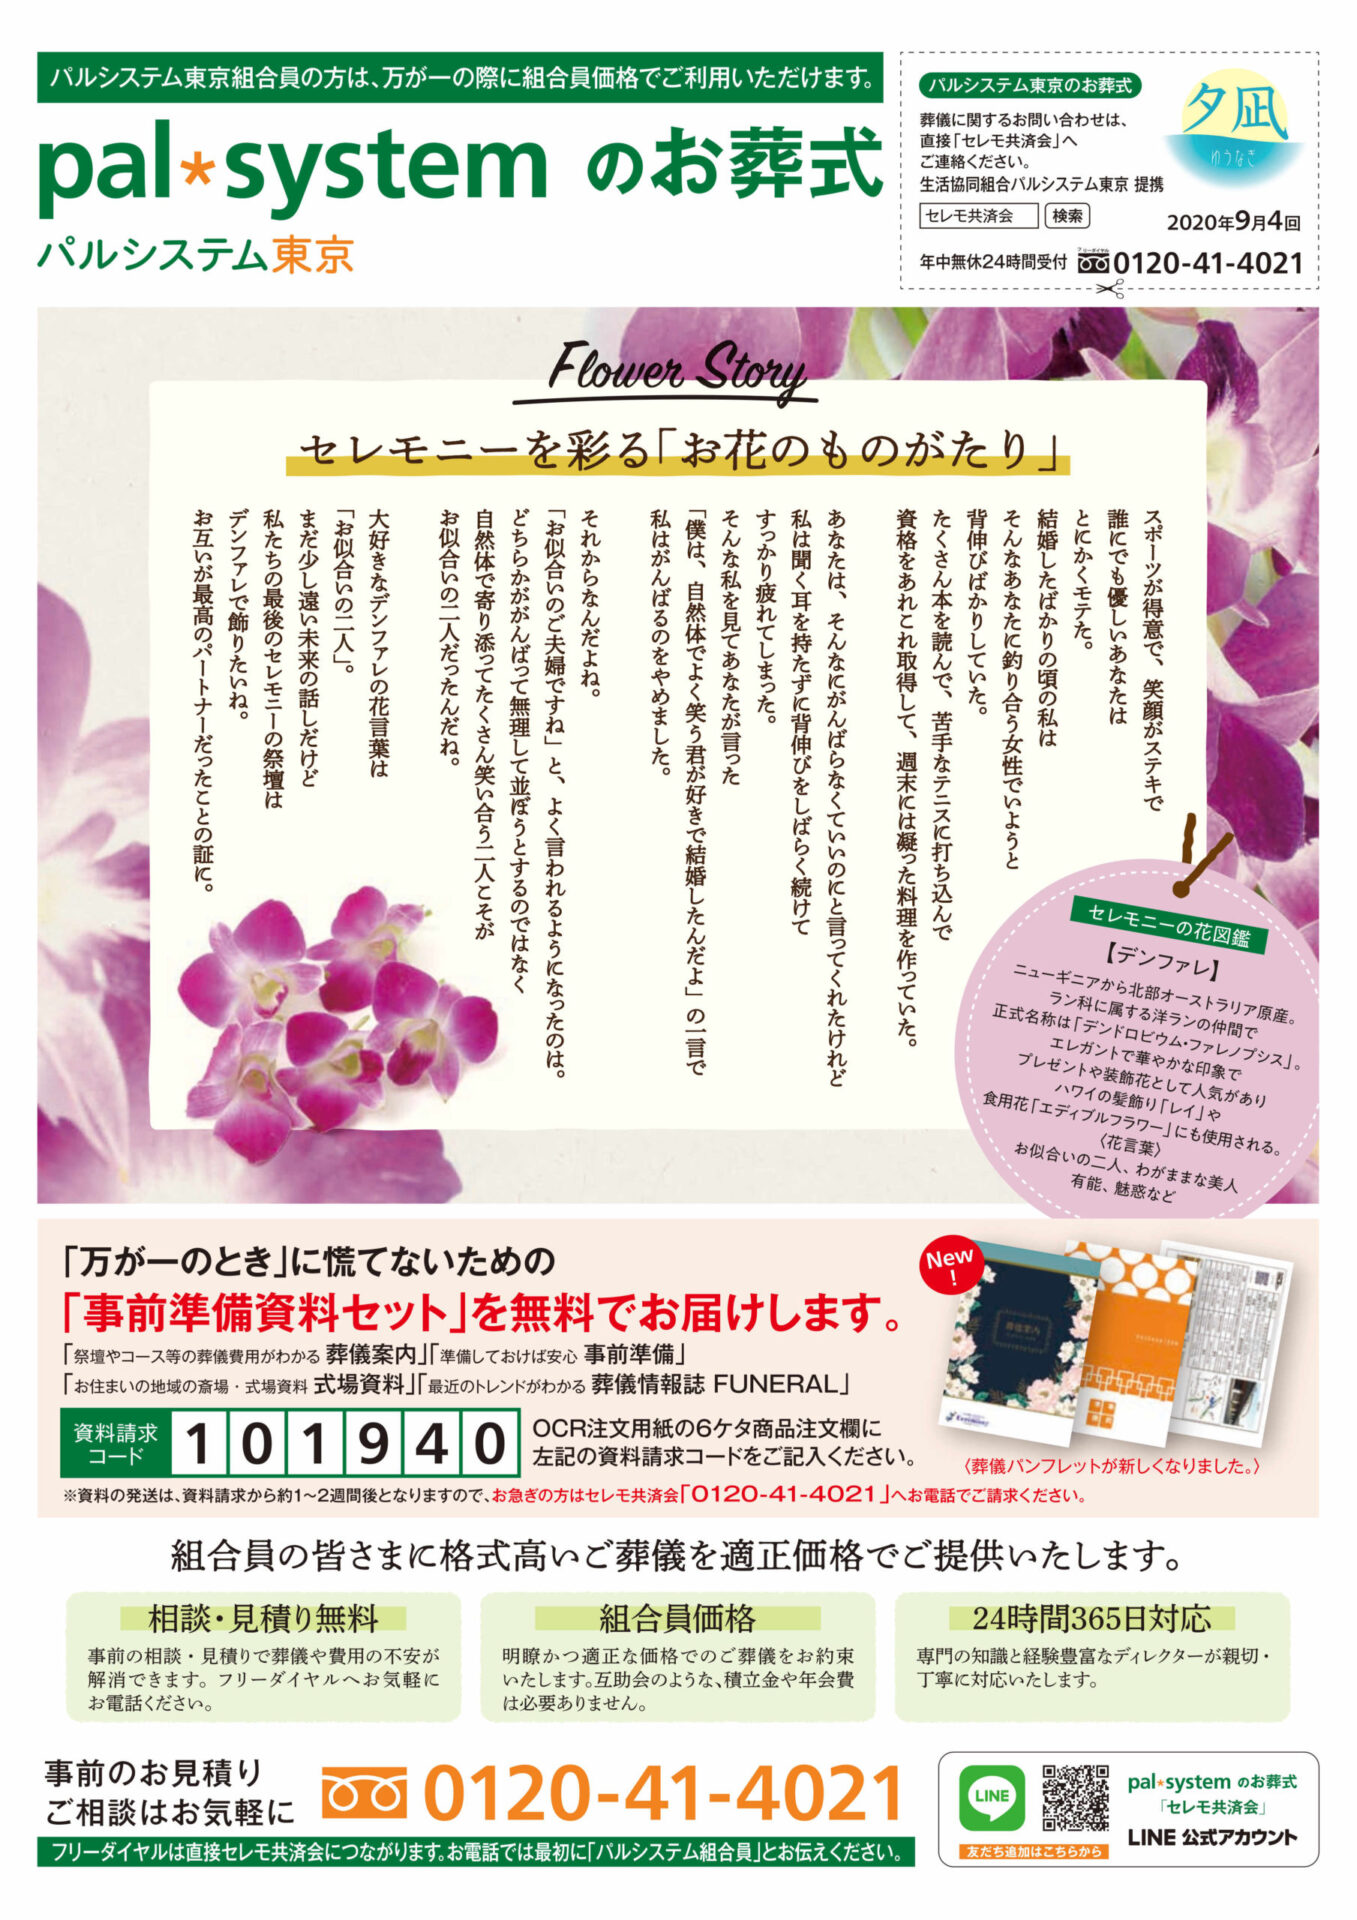 生活協同組合パルシテム東京 palsystemのお葬式 夕凪葬 葬儀チラシ 2020年9月企画